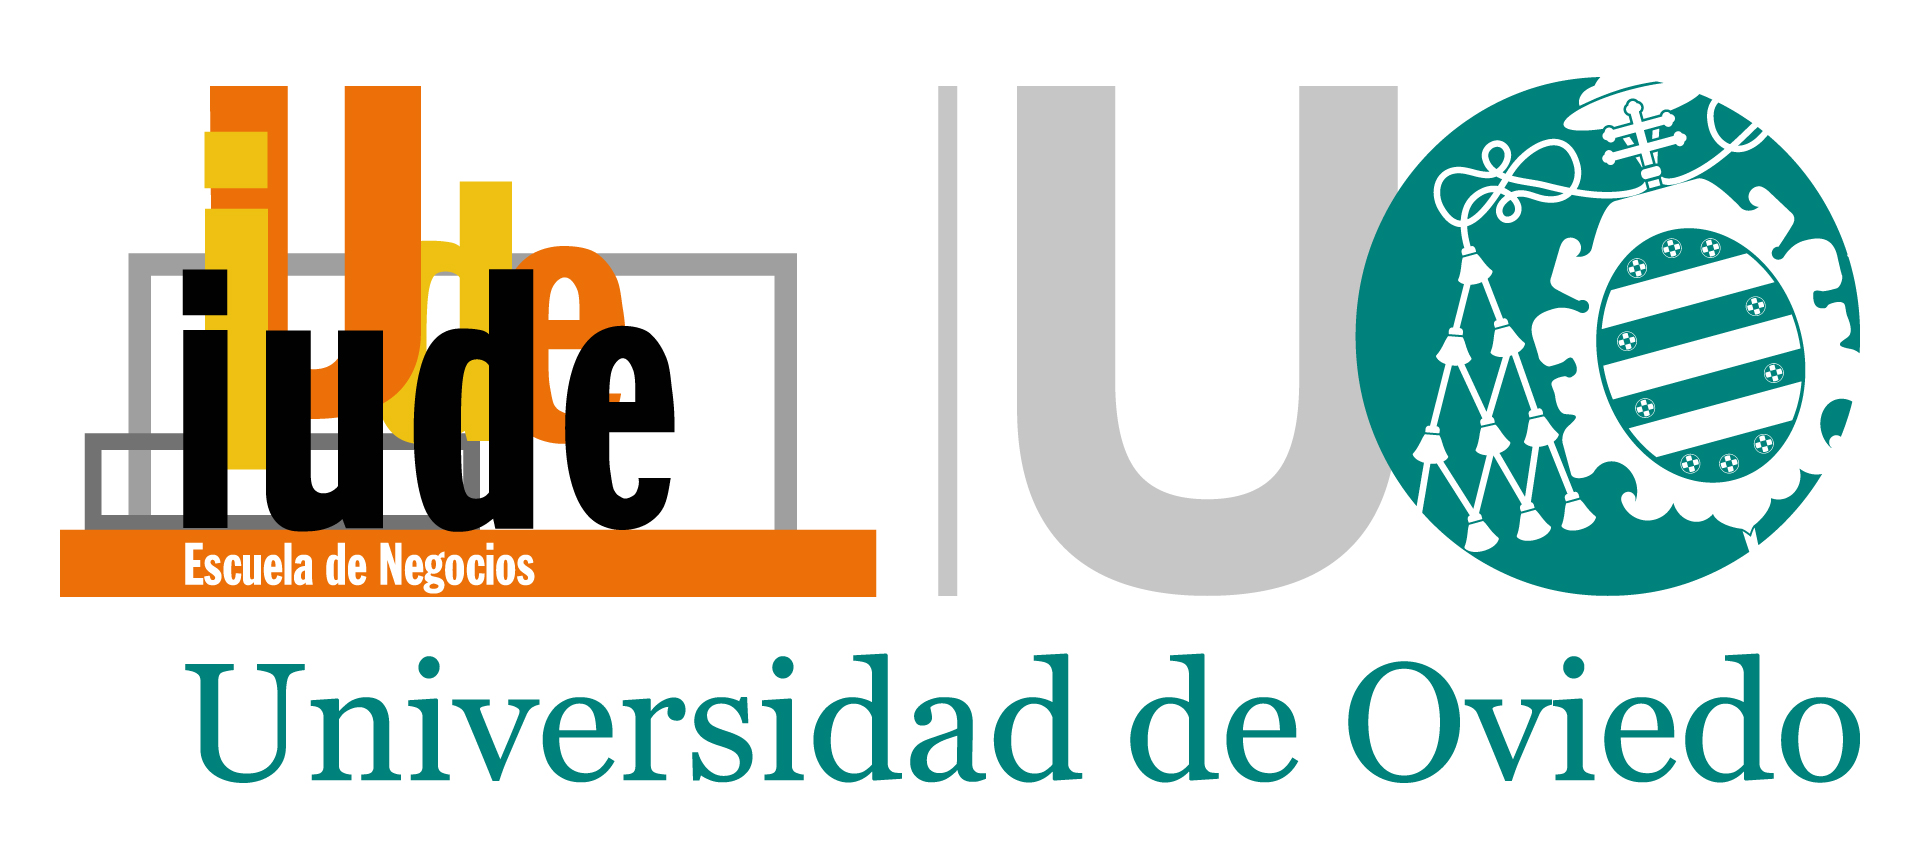 IUDE Universidad Oviedo